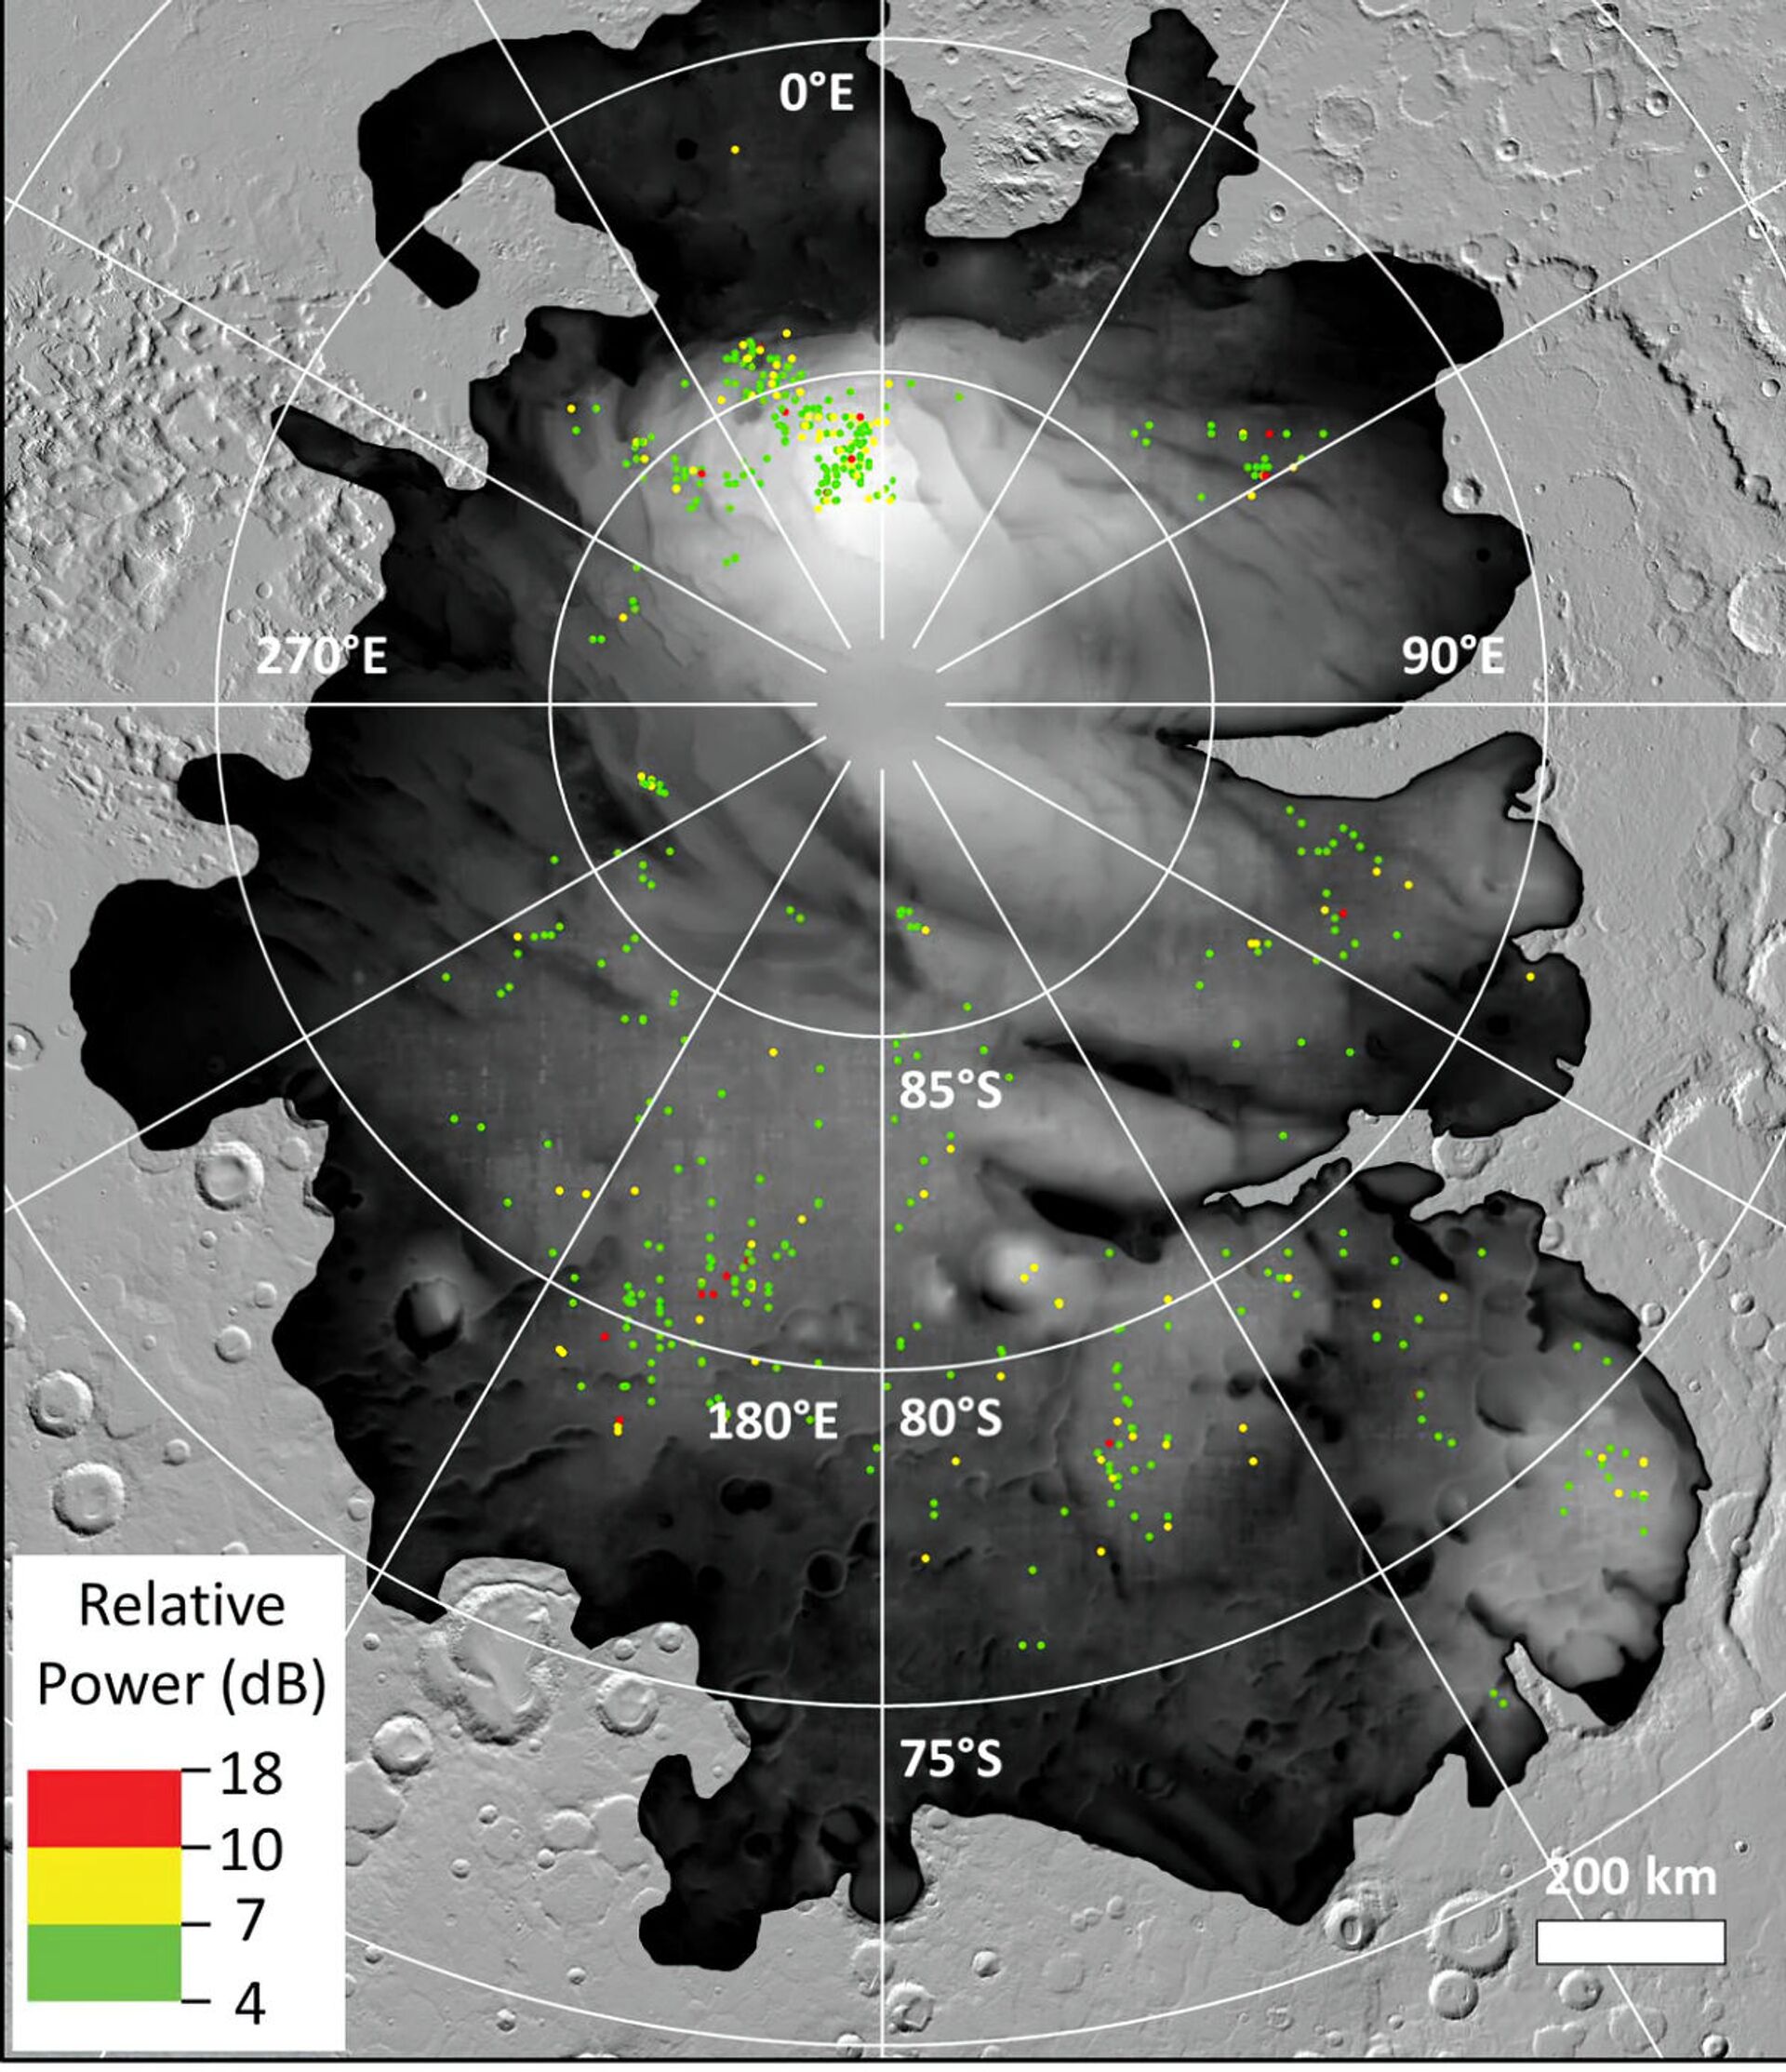 Novo estudo sugere que Marte teria dezenas de lagos subterrâneos (FOTOS) - Sputnik Brasil, 1920, 29.06.2021